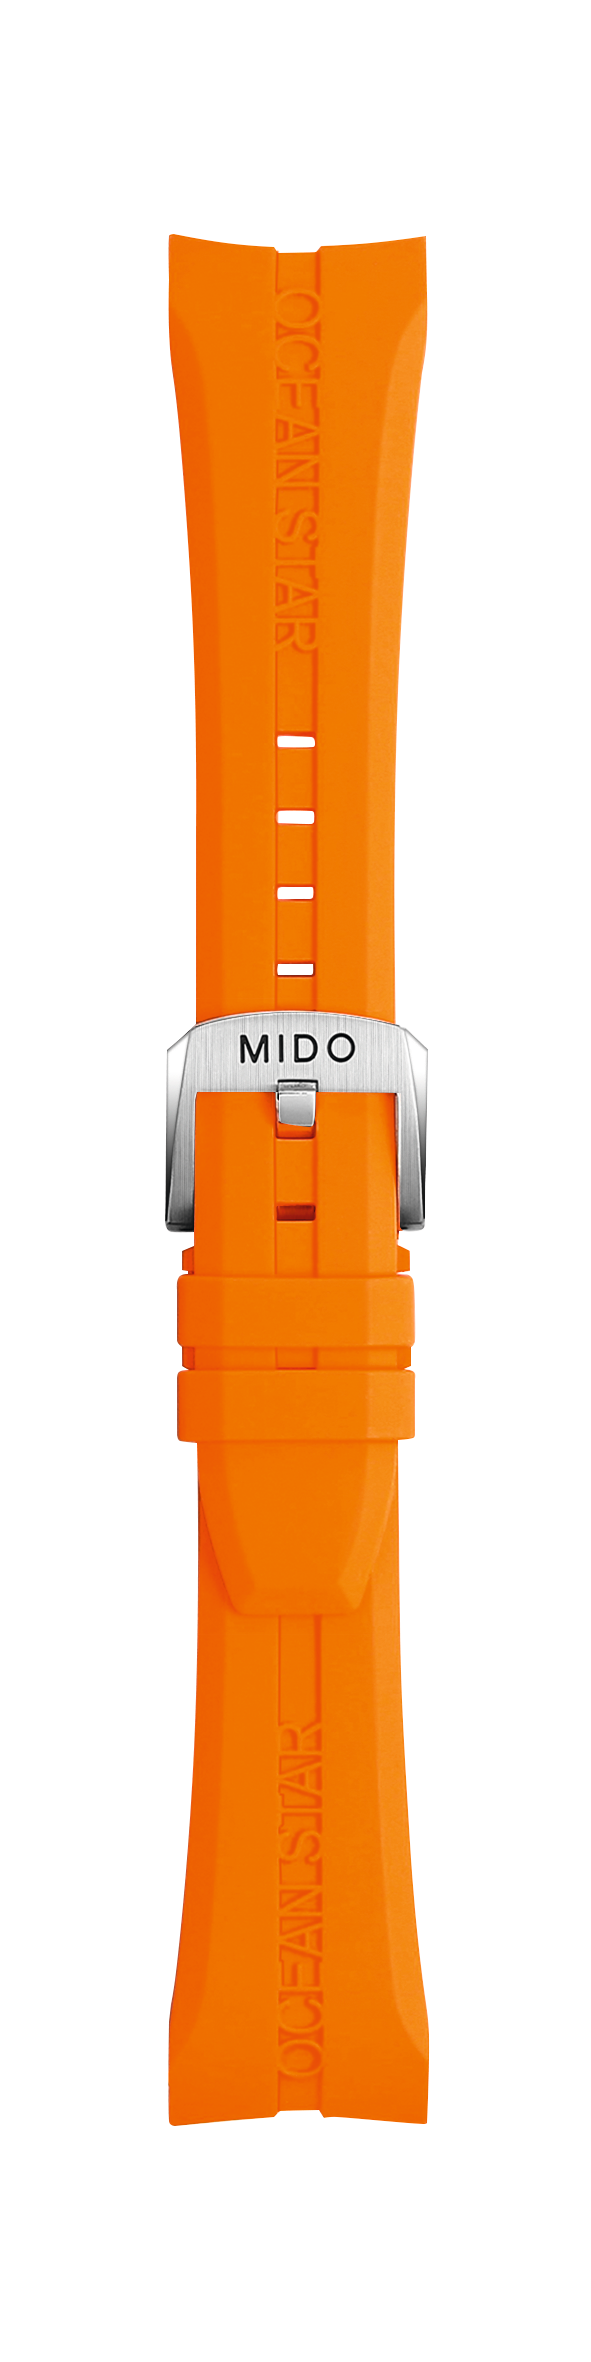 MIDO Ocean Star M011417A / M011430A Orange Rubber Watch Band - WATCHBAND EXPERT